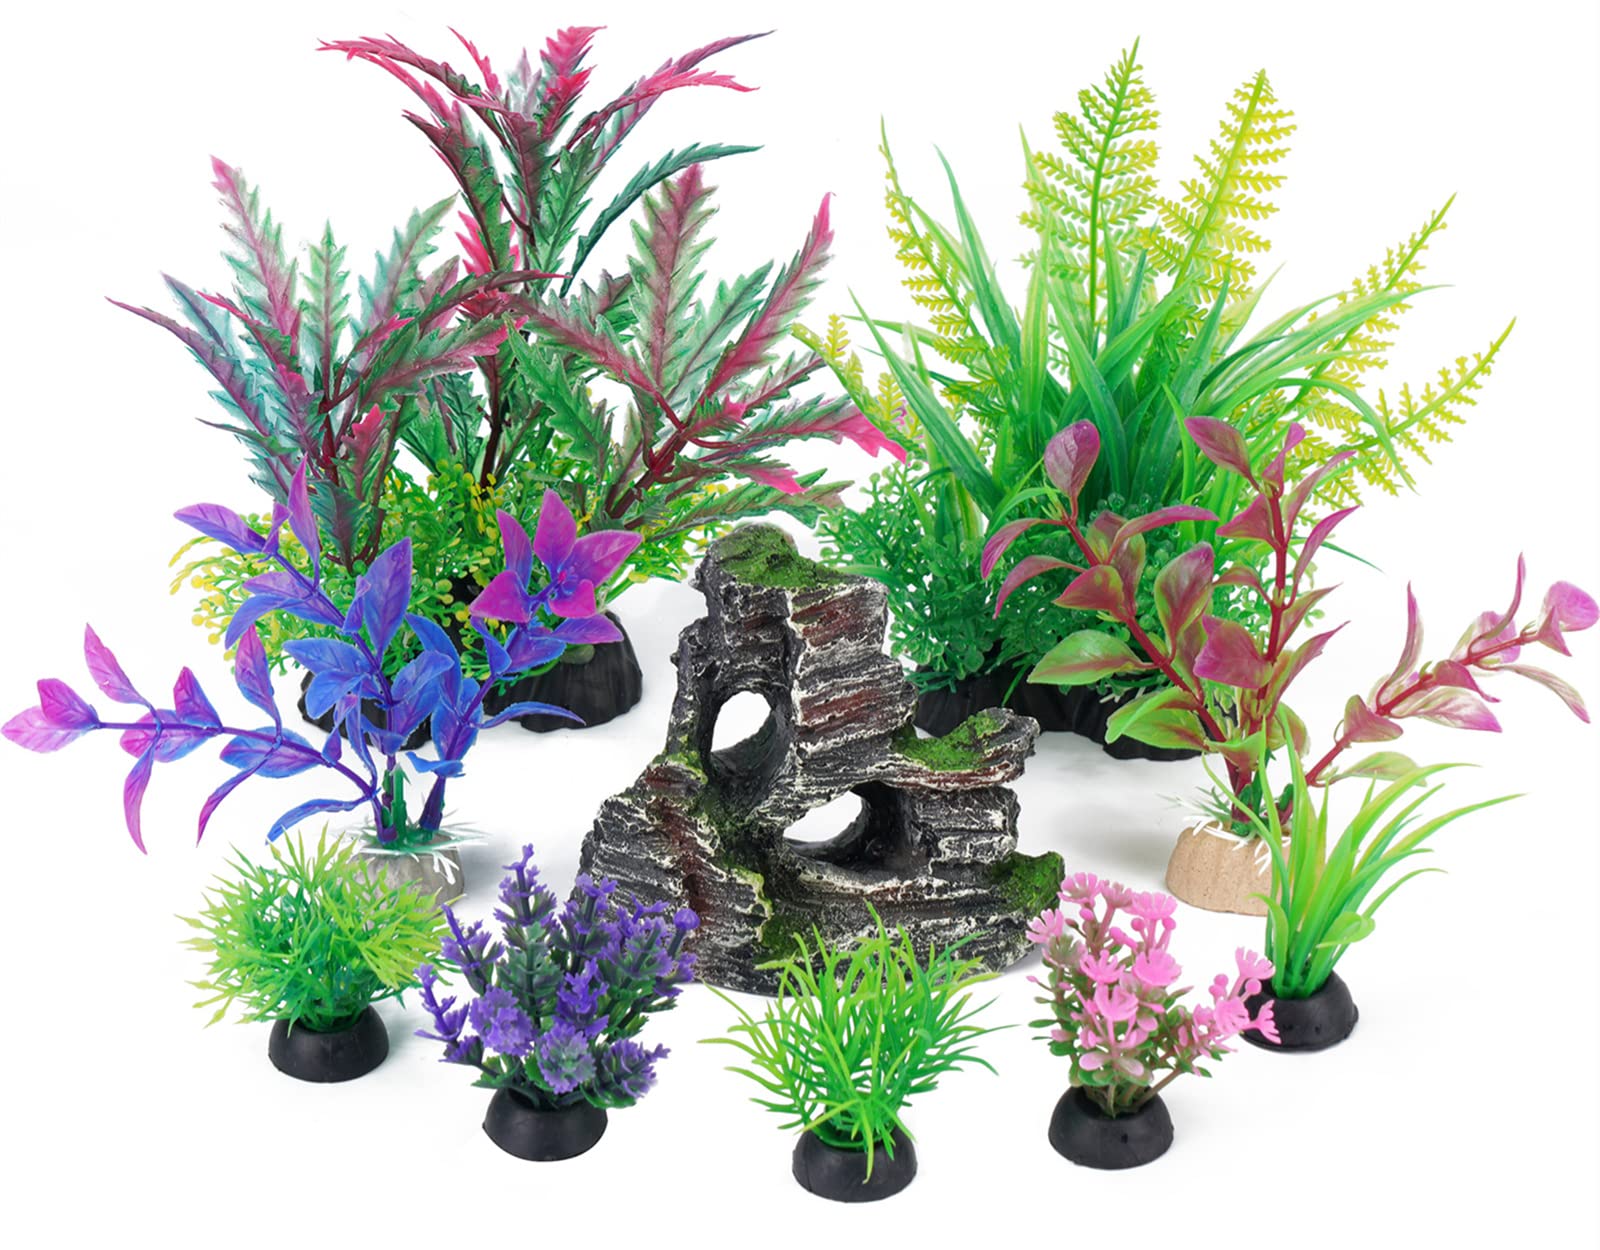 Fish Tank Decorations Aquarium Artificial Plastic Plants & Cave